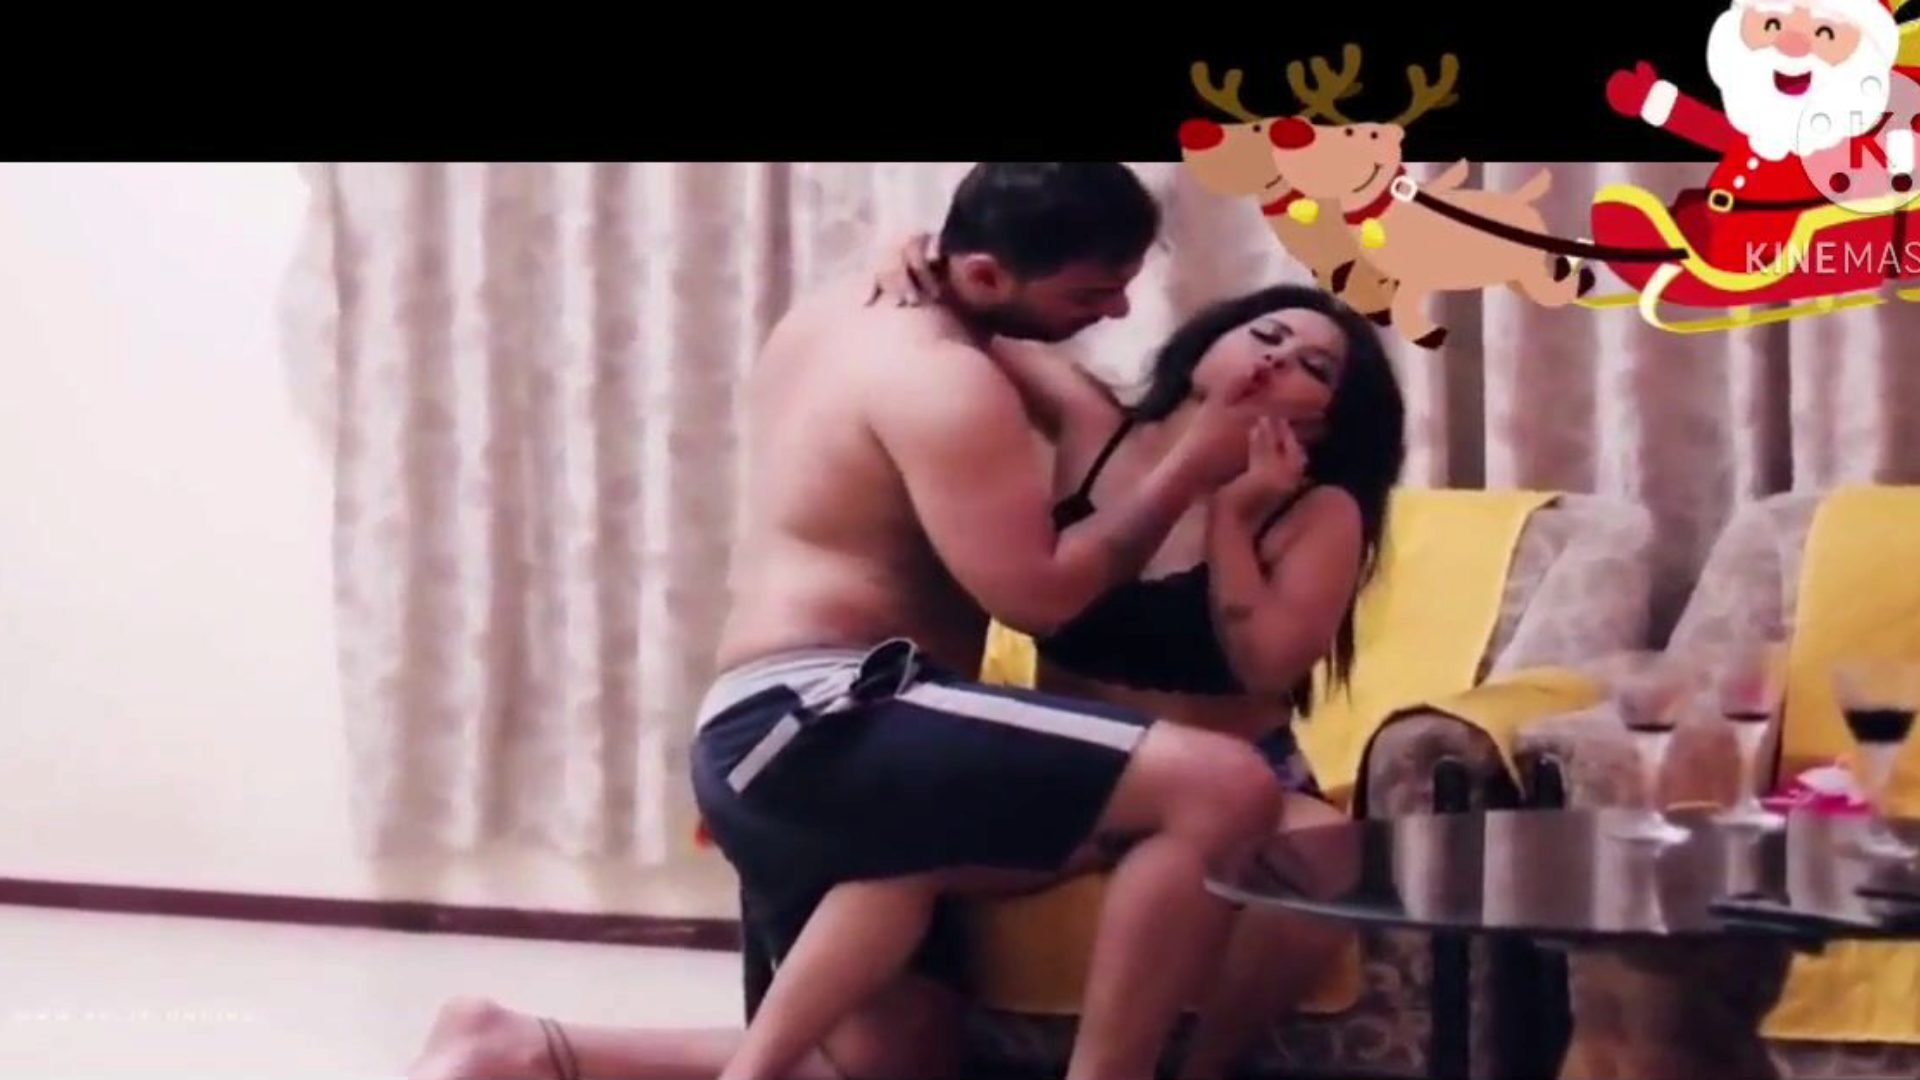 καυτότερο ινδικό ζευγάρι καλύτερο ερωτικό παιχνίδι και σεξ στο πάτωμα: πορνό 73 παρακολουθήστε το καυτότερο ινδικό ζευγάρι καλύτερο ερωτικό παιχνίδι σεξ στο δάπεδο σκηνή ταινίας στο xhamster - η απόλυτη συλλογή δωρεάν ασιατικών hardcore hd xxx επεισόδια πορνογραφικού σωλήνα